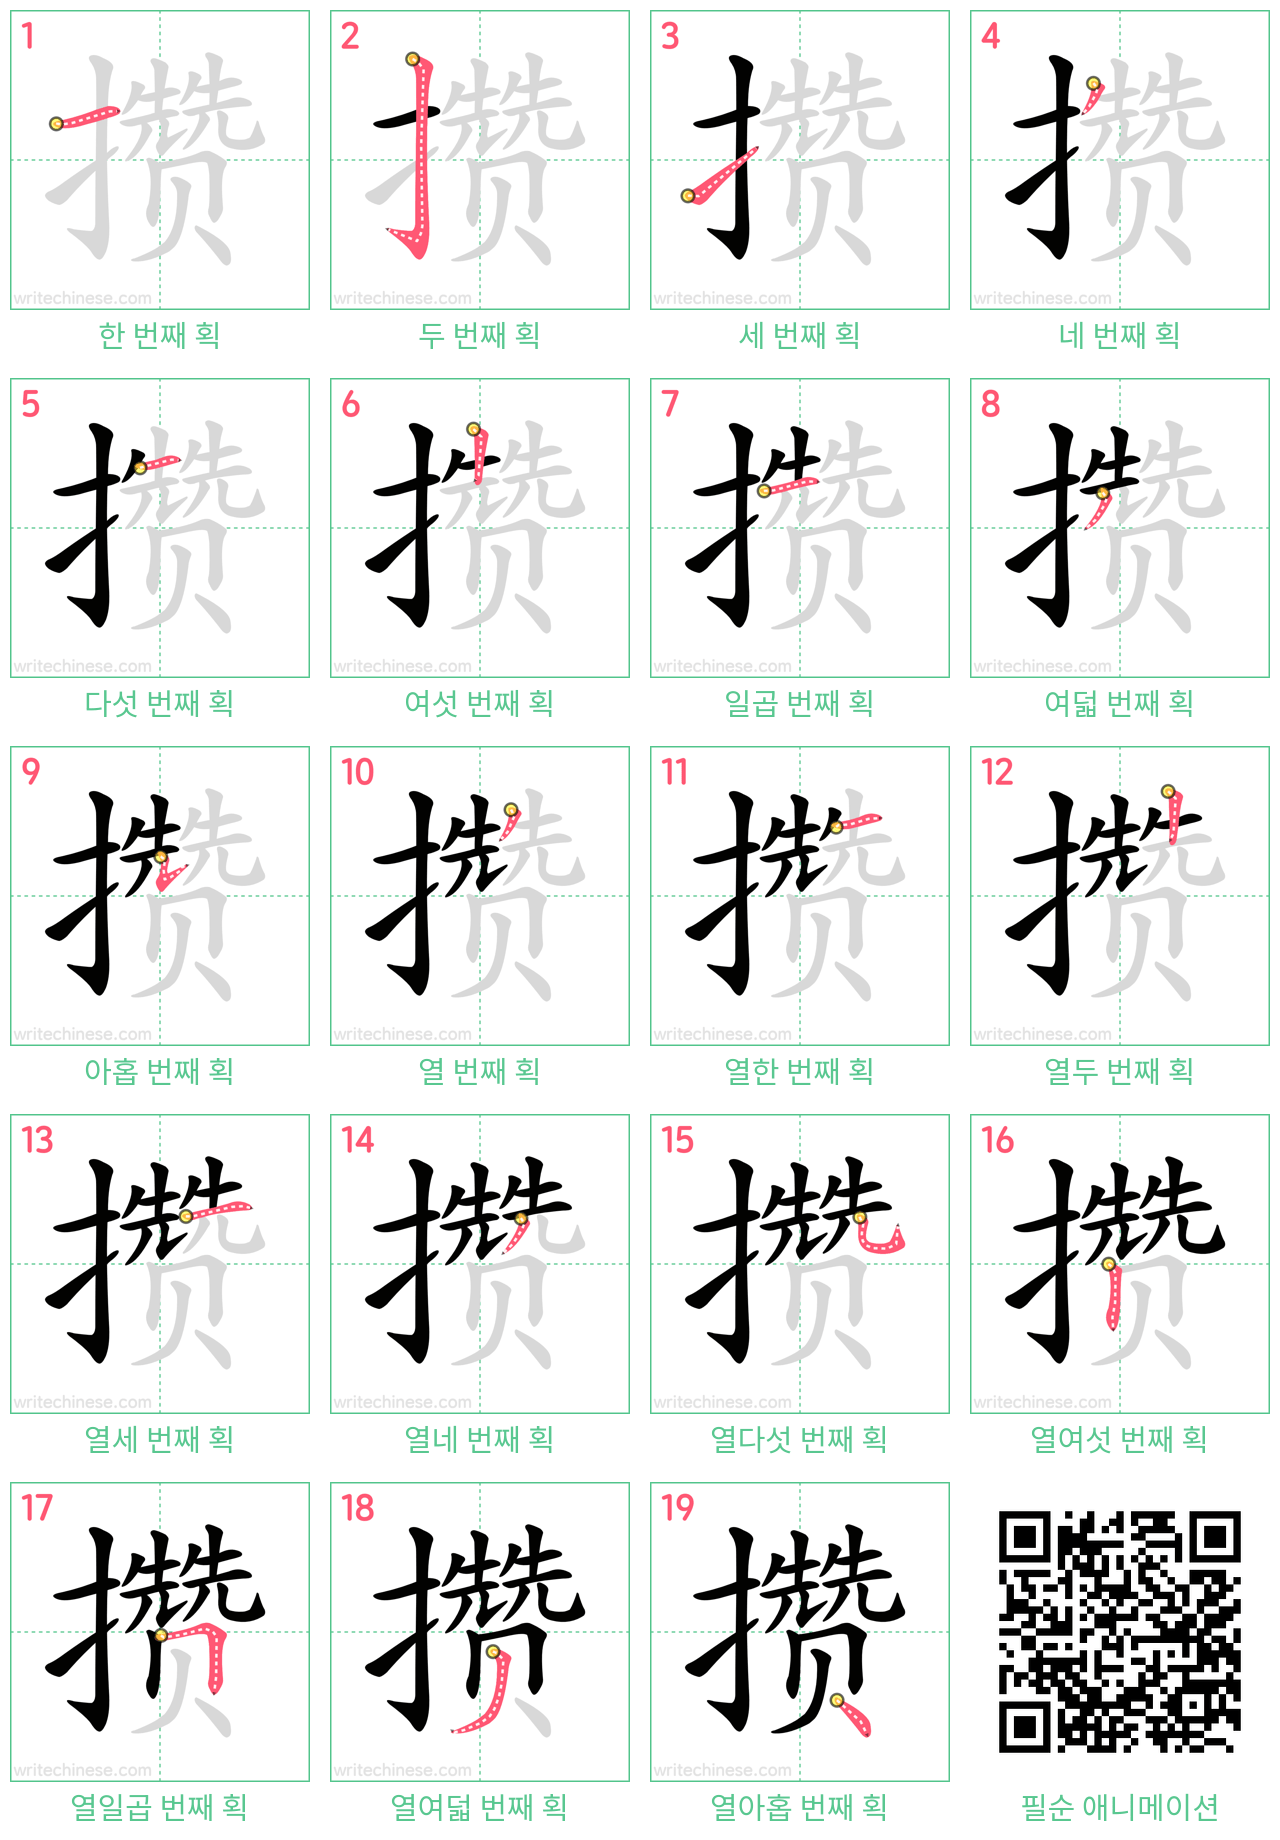 攒 step-by-step stroke order diagrams